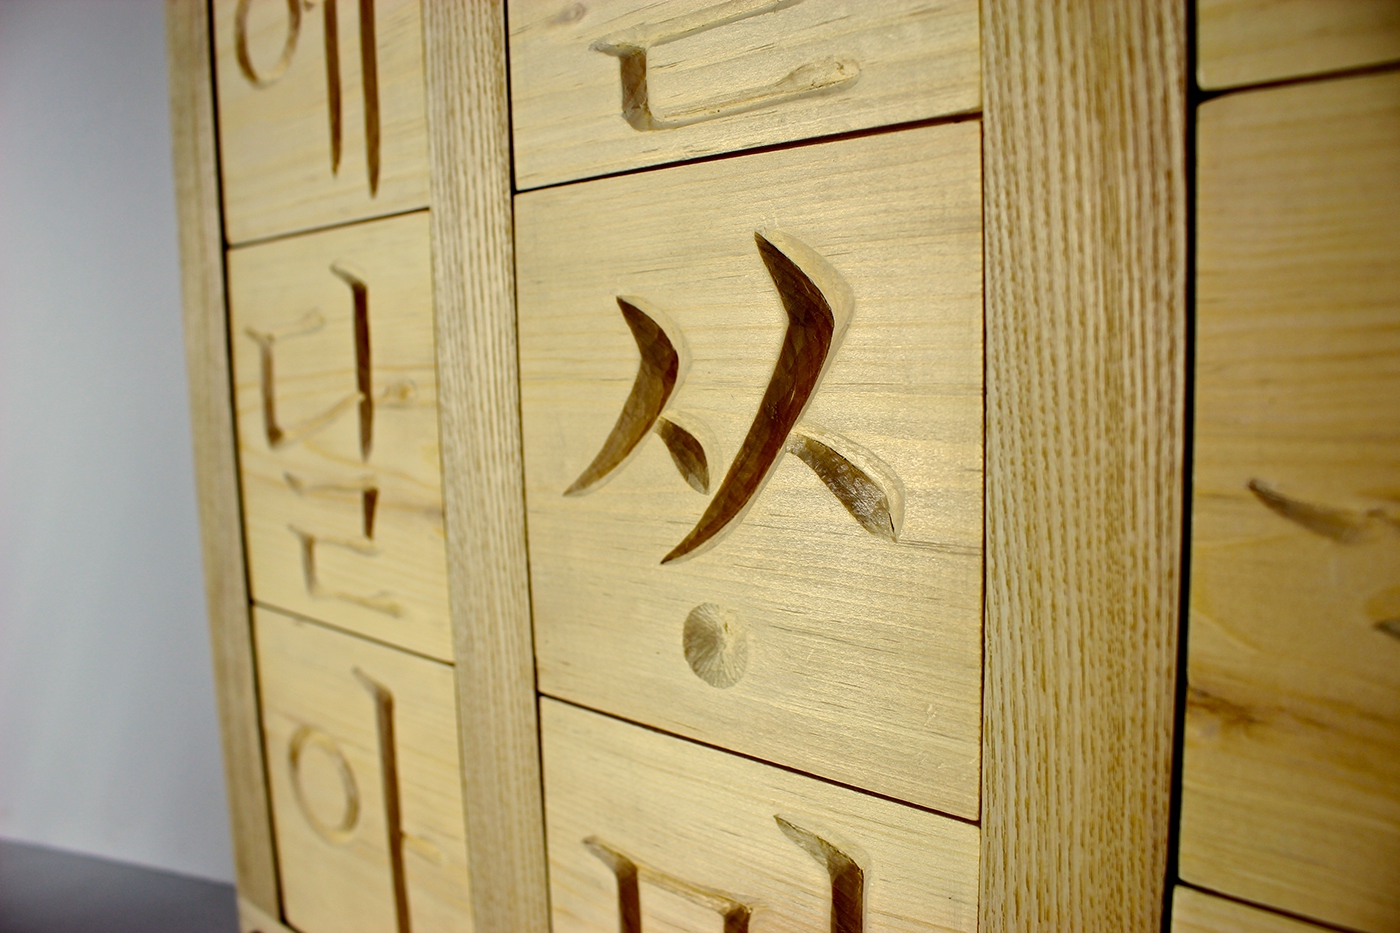 korean king sejong 한글 훈민정음 세종대왕 나랏말씀이 중국과달라 wood carving hand carving